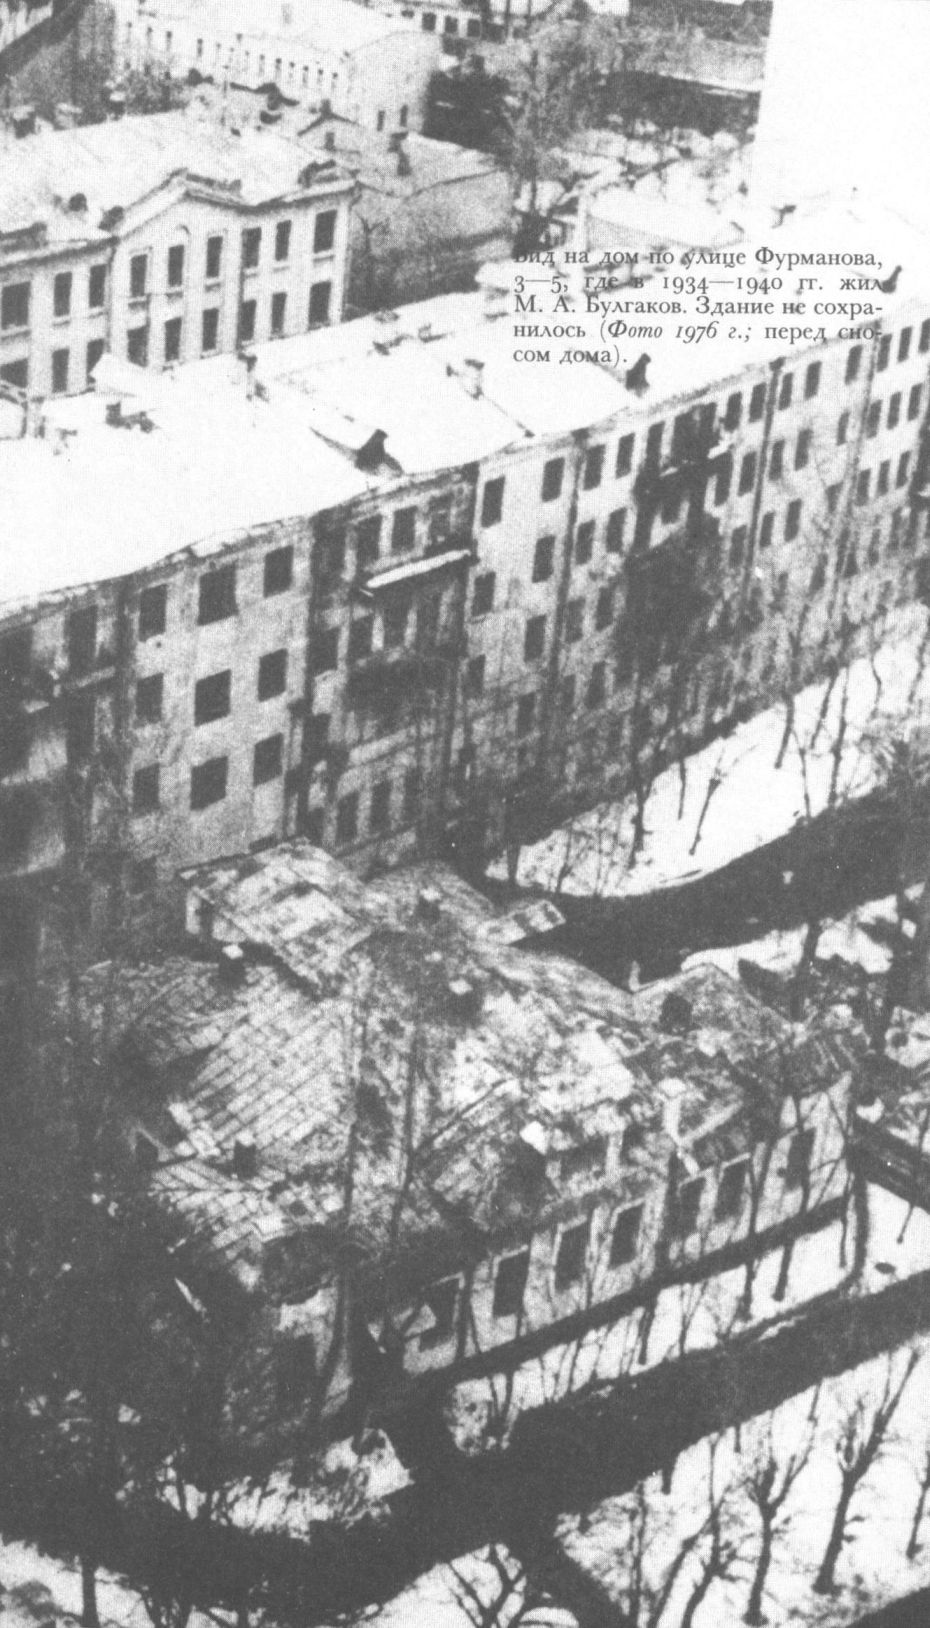 Вид на дом по улице Фурманова, 3—5, где в 1934—1940 гг. жил М.А. Булгаков. Здание не сохранилось (Фото 1976 г.; перед сносом дома)